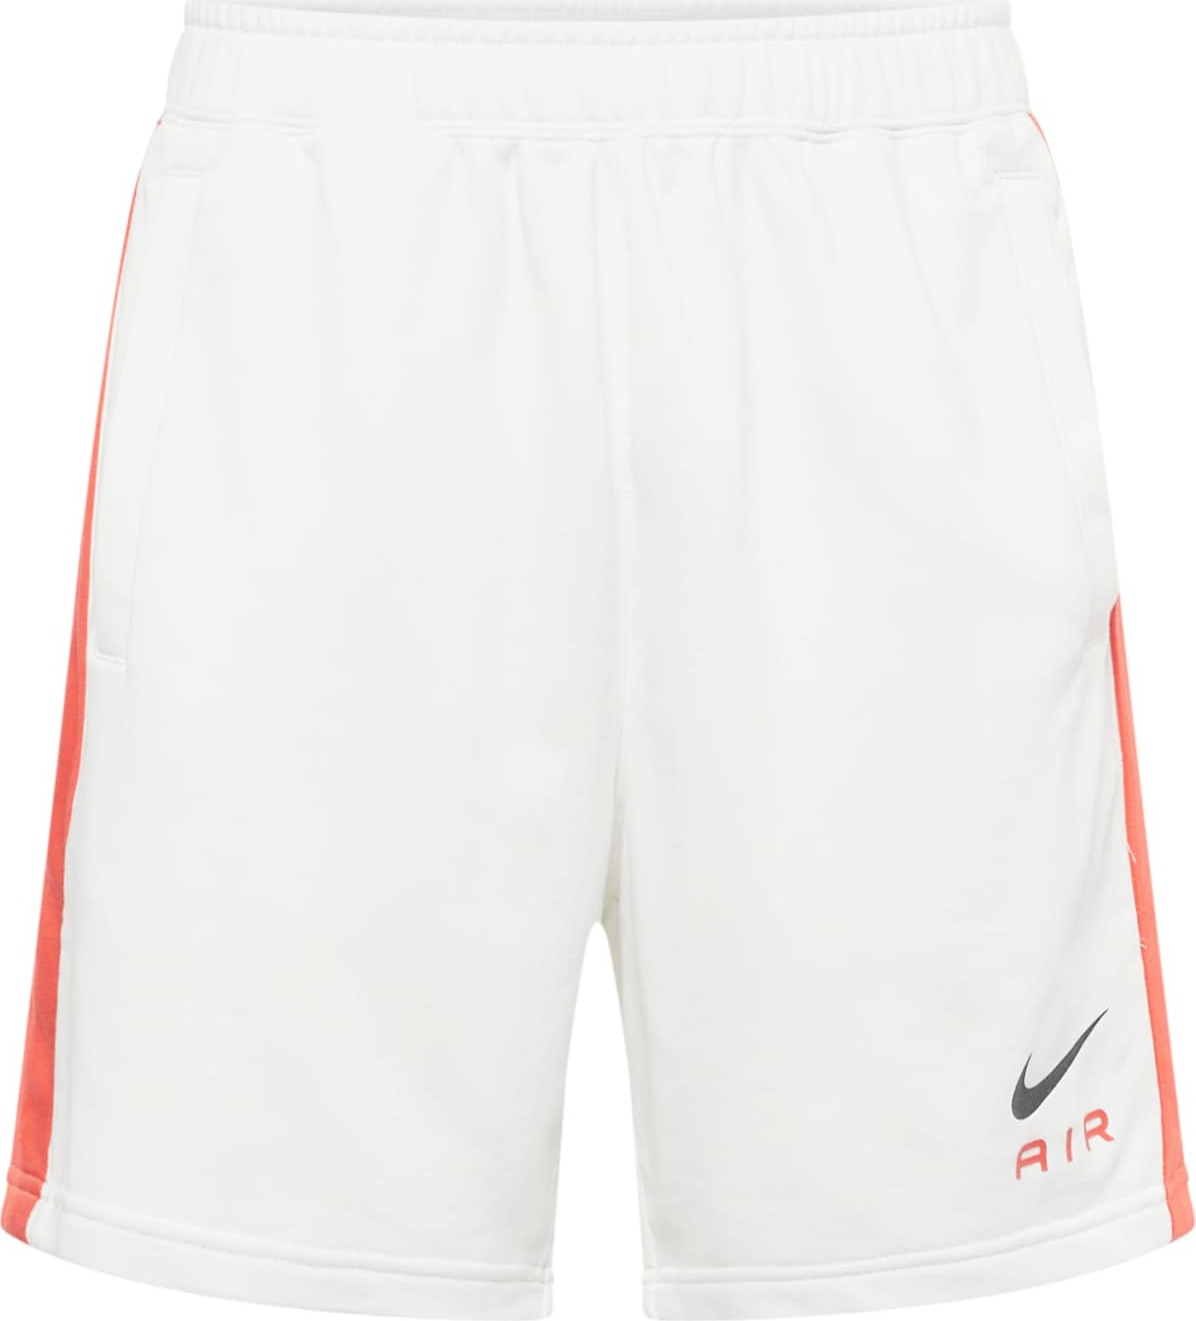 Kalhoty Nike Sportswear oranžová / černá / bílá